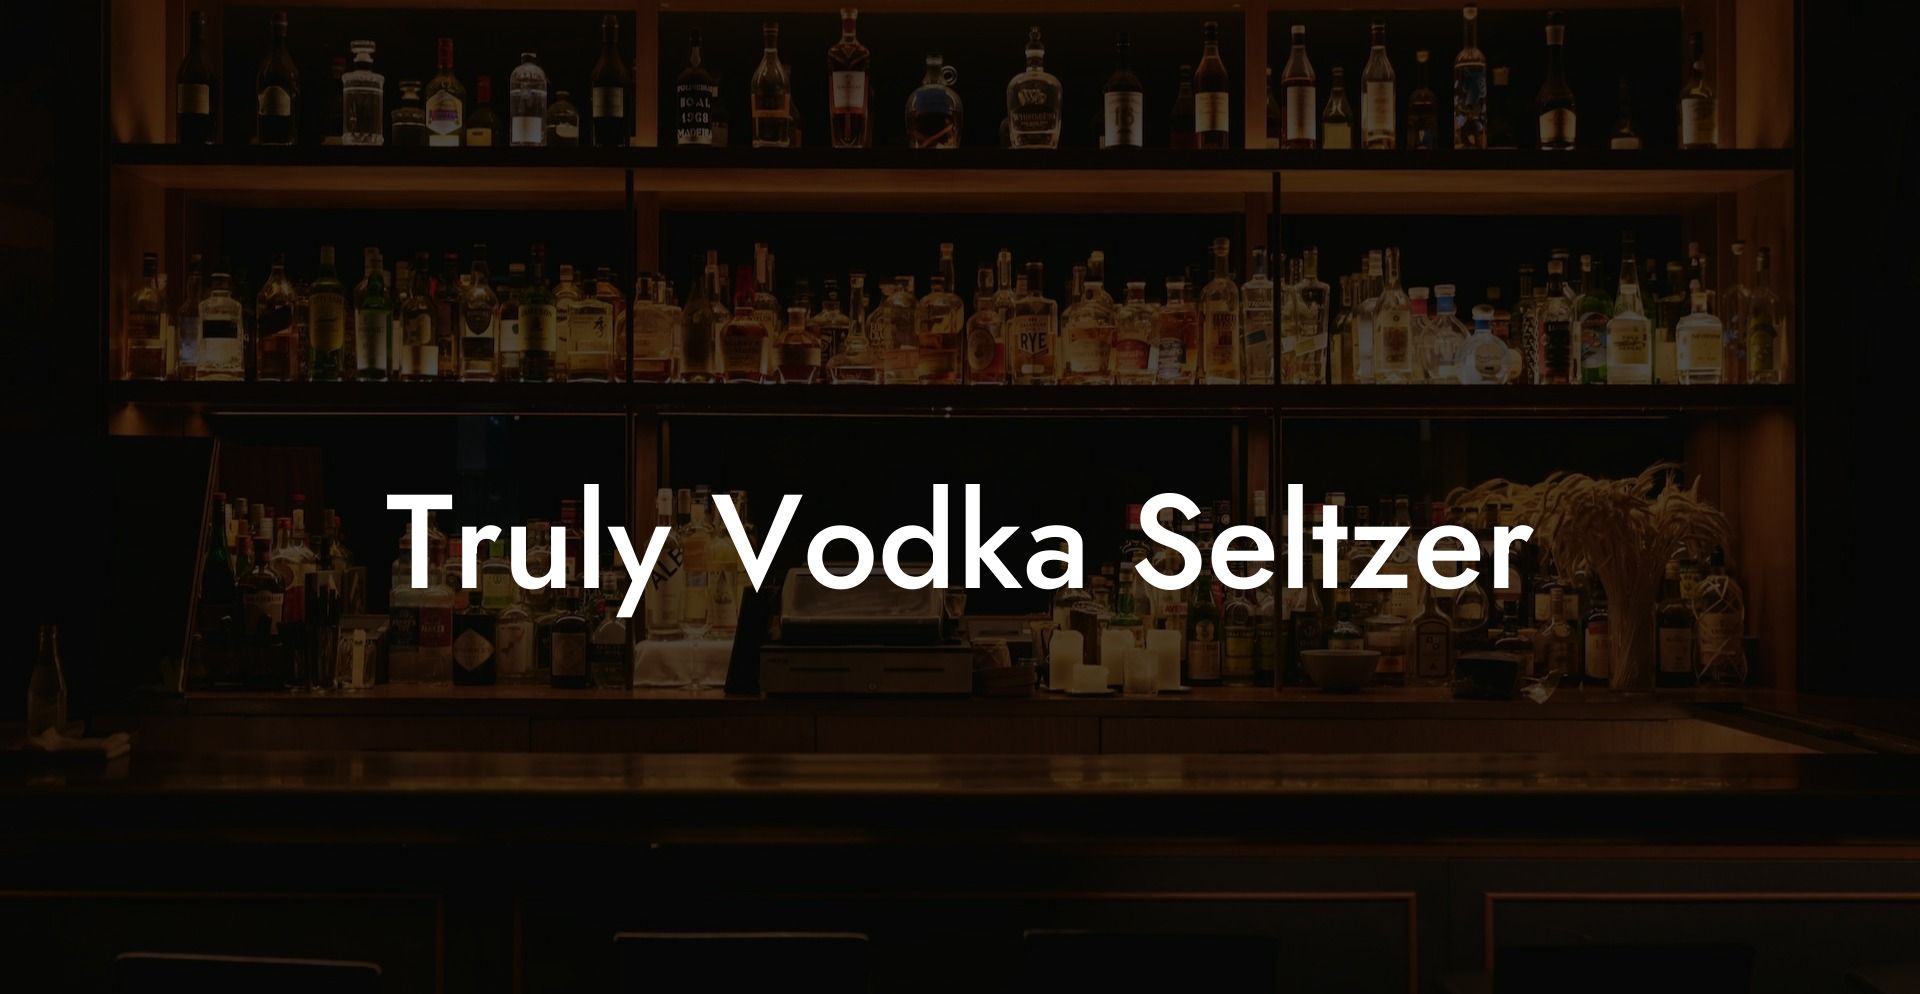 Truly Vodka Seltzer